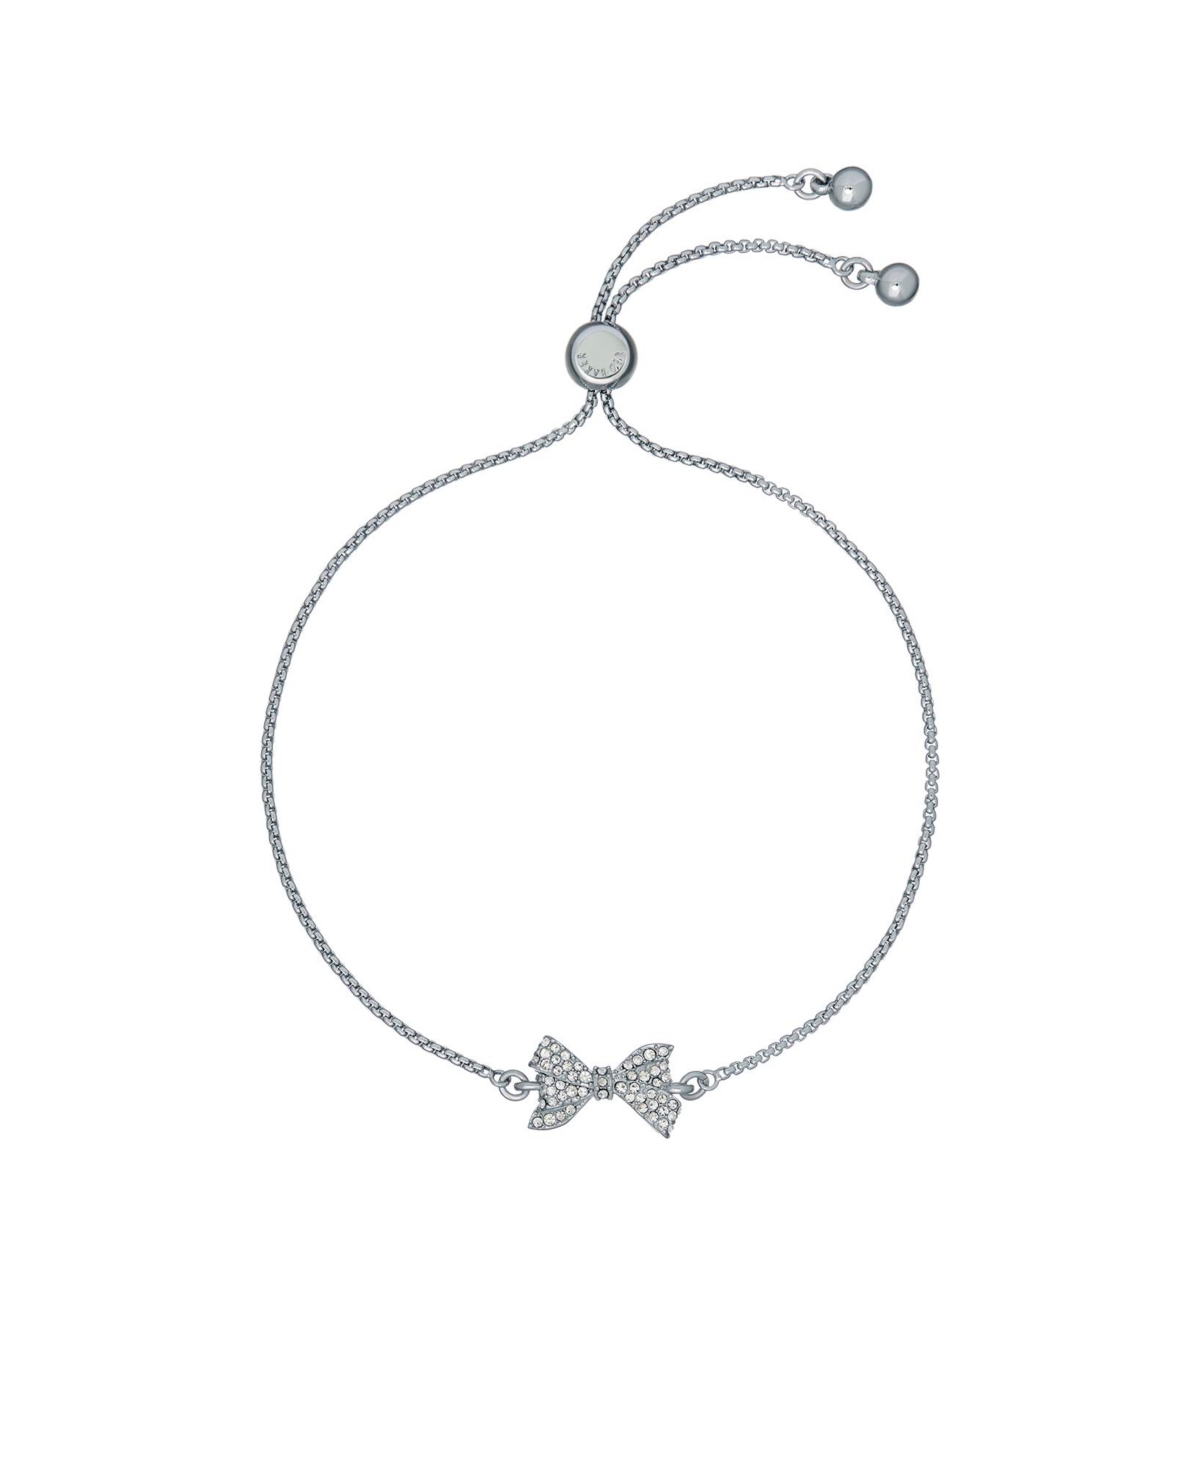 Barset: Crystal Bow Adjustable Bracelet - Silver